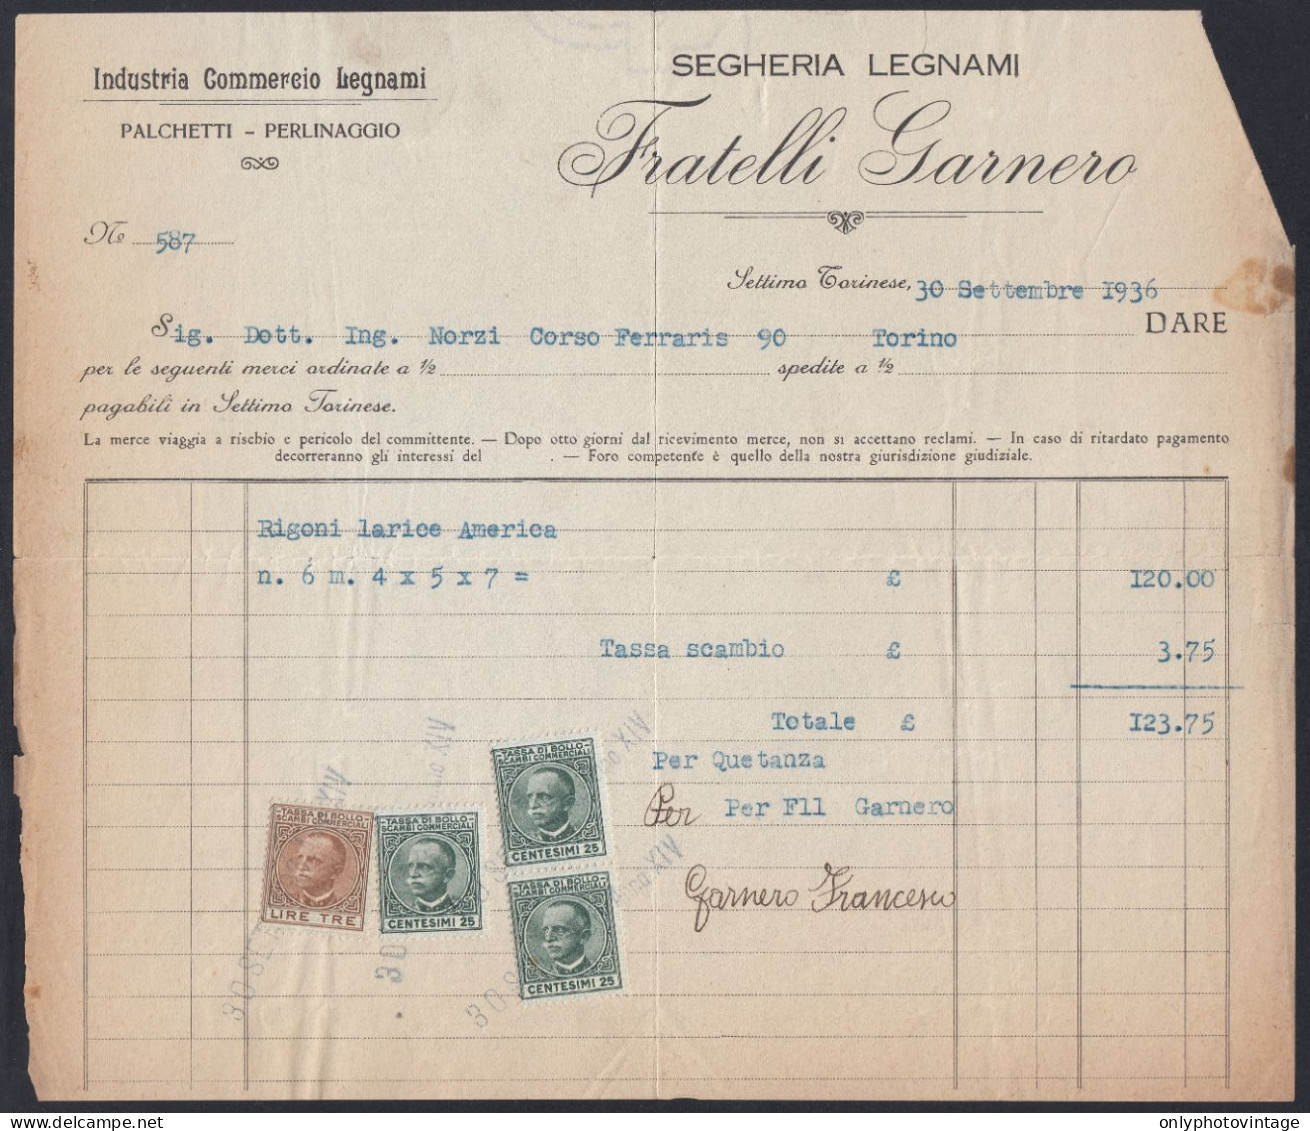 Settimo Torinese 1936 - Fratelli Garnero - Segheria Legnami - Fattura - Italy